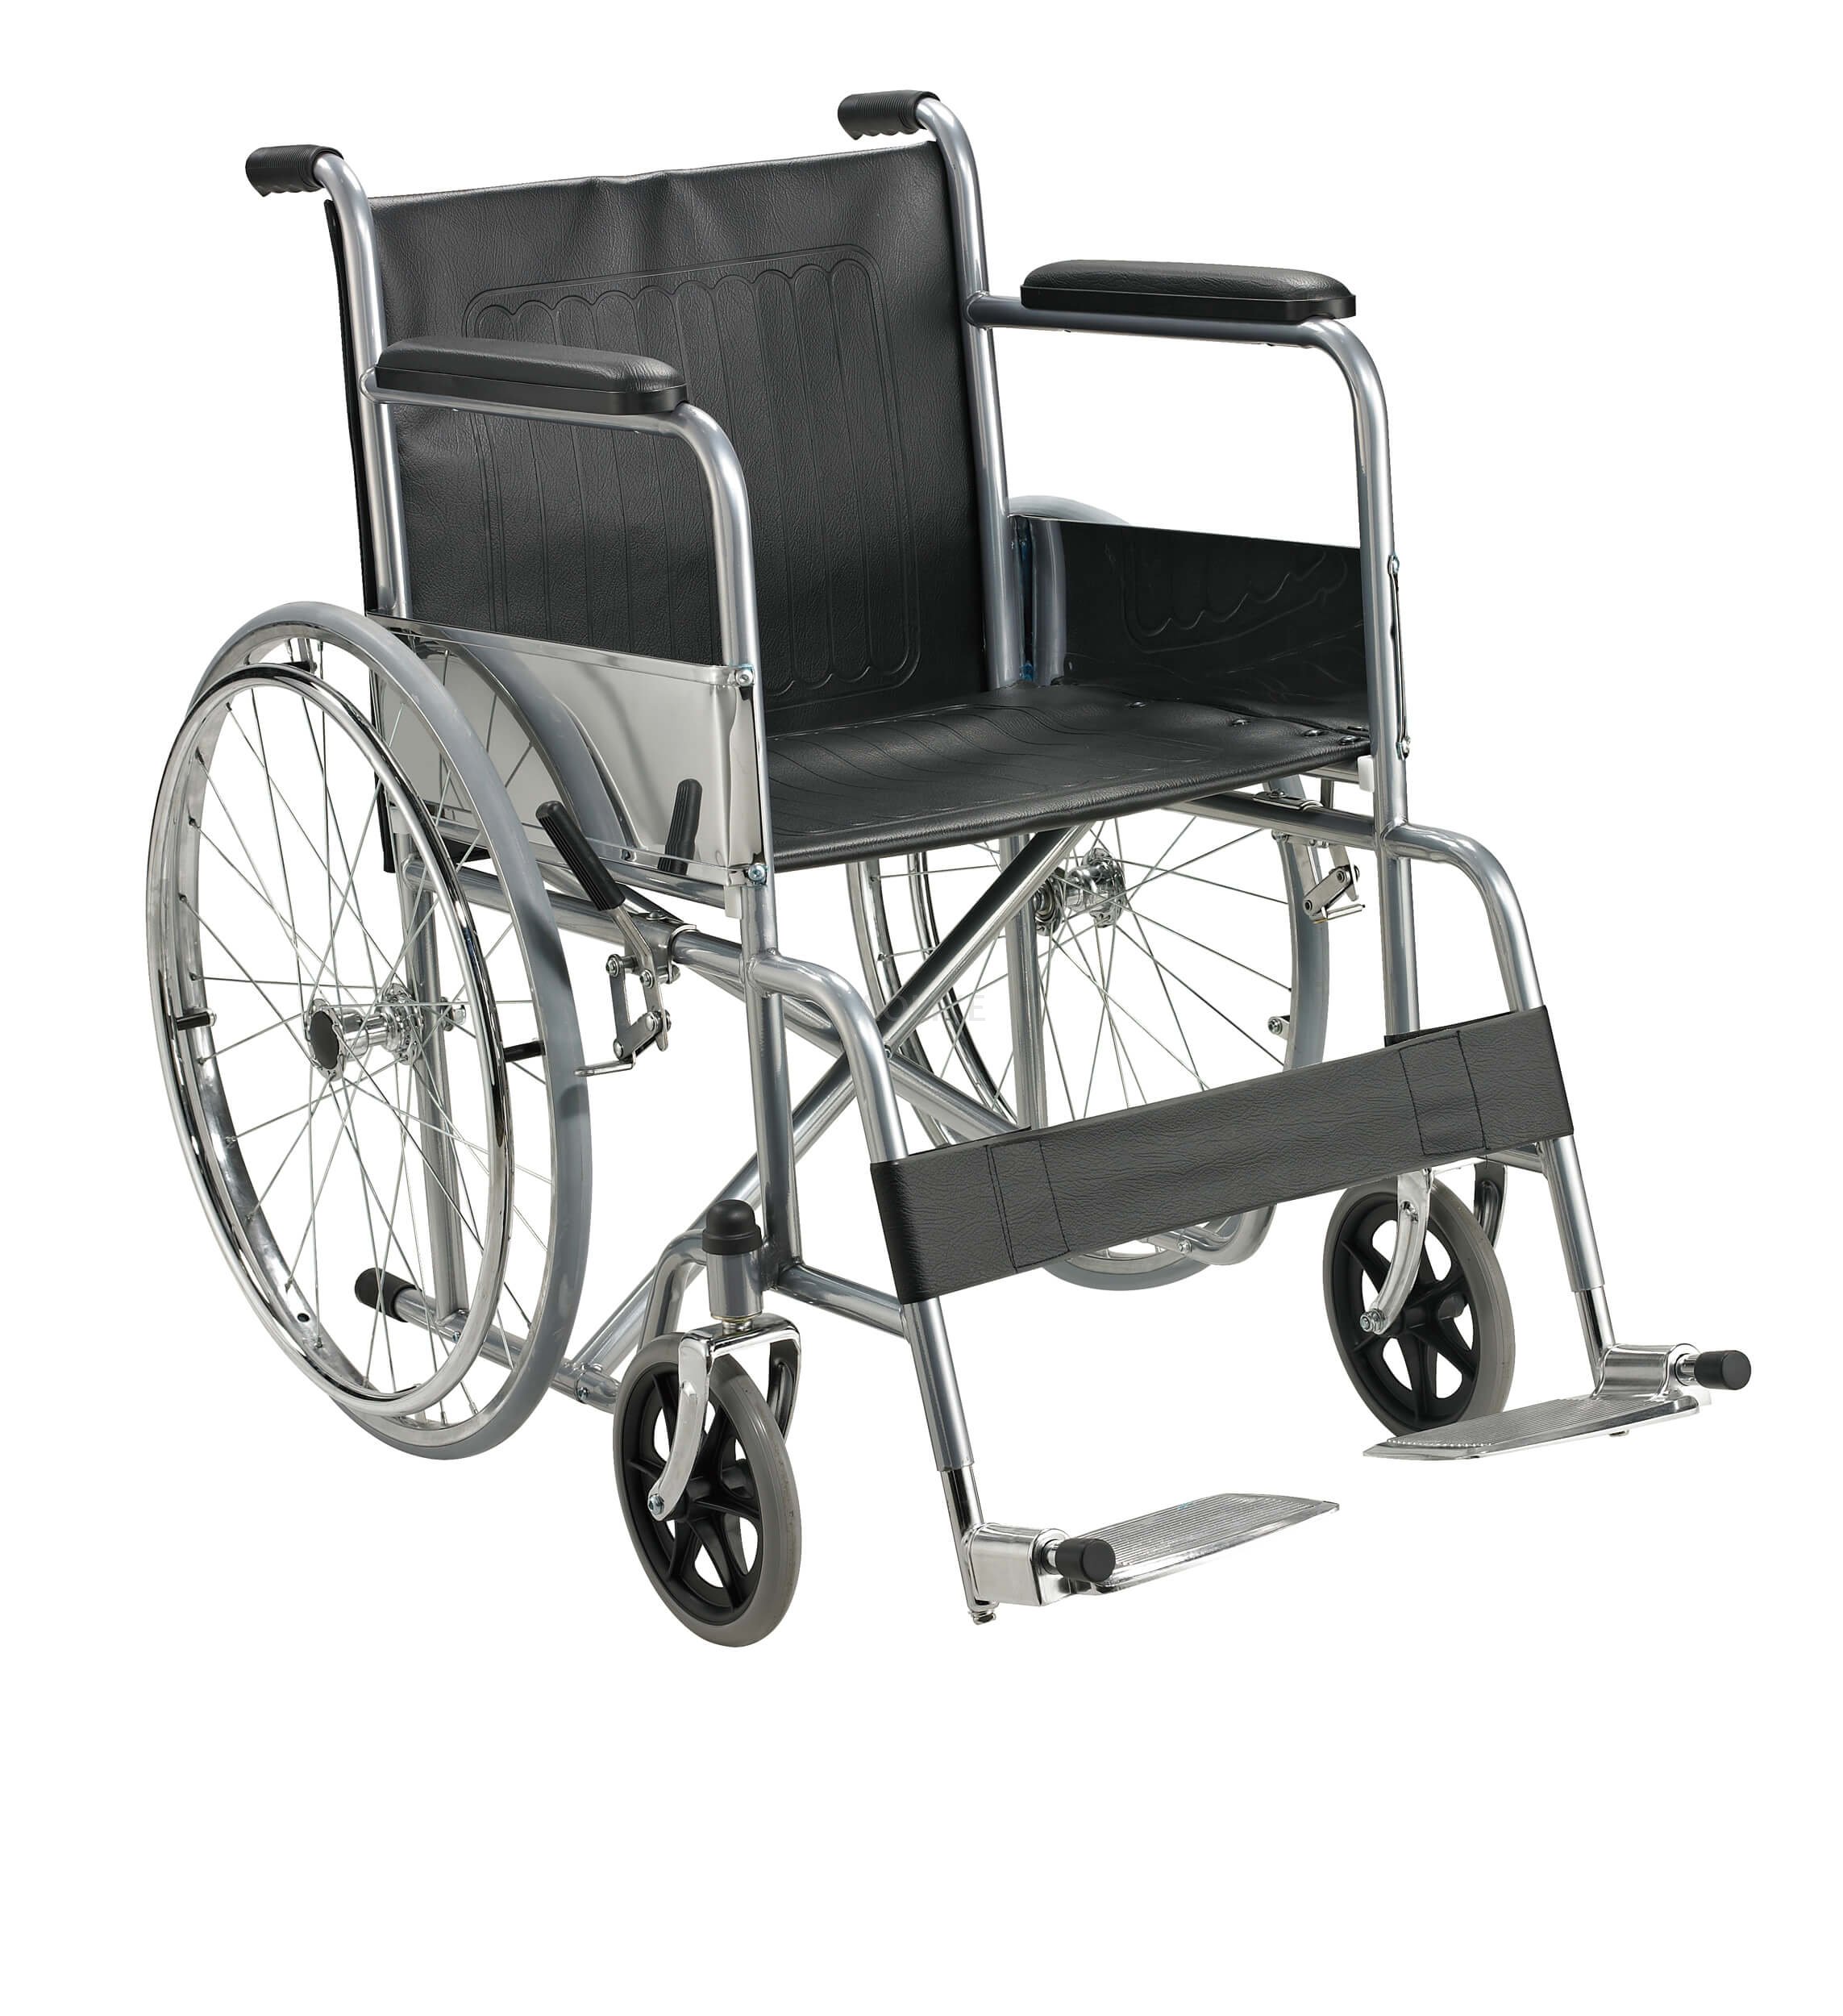 Acero plegable económico más barato en silla de ruedas alk809-46